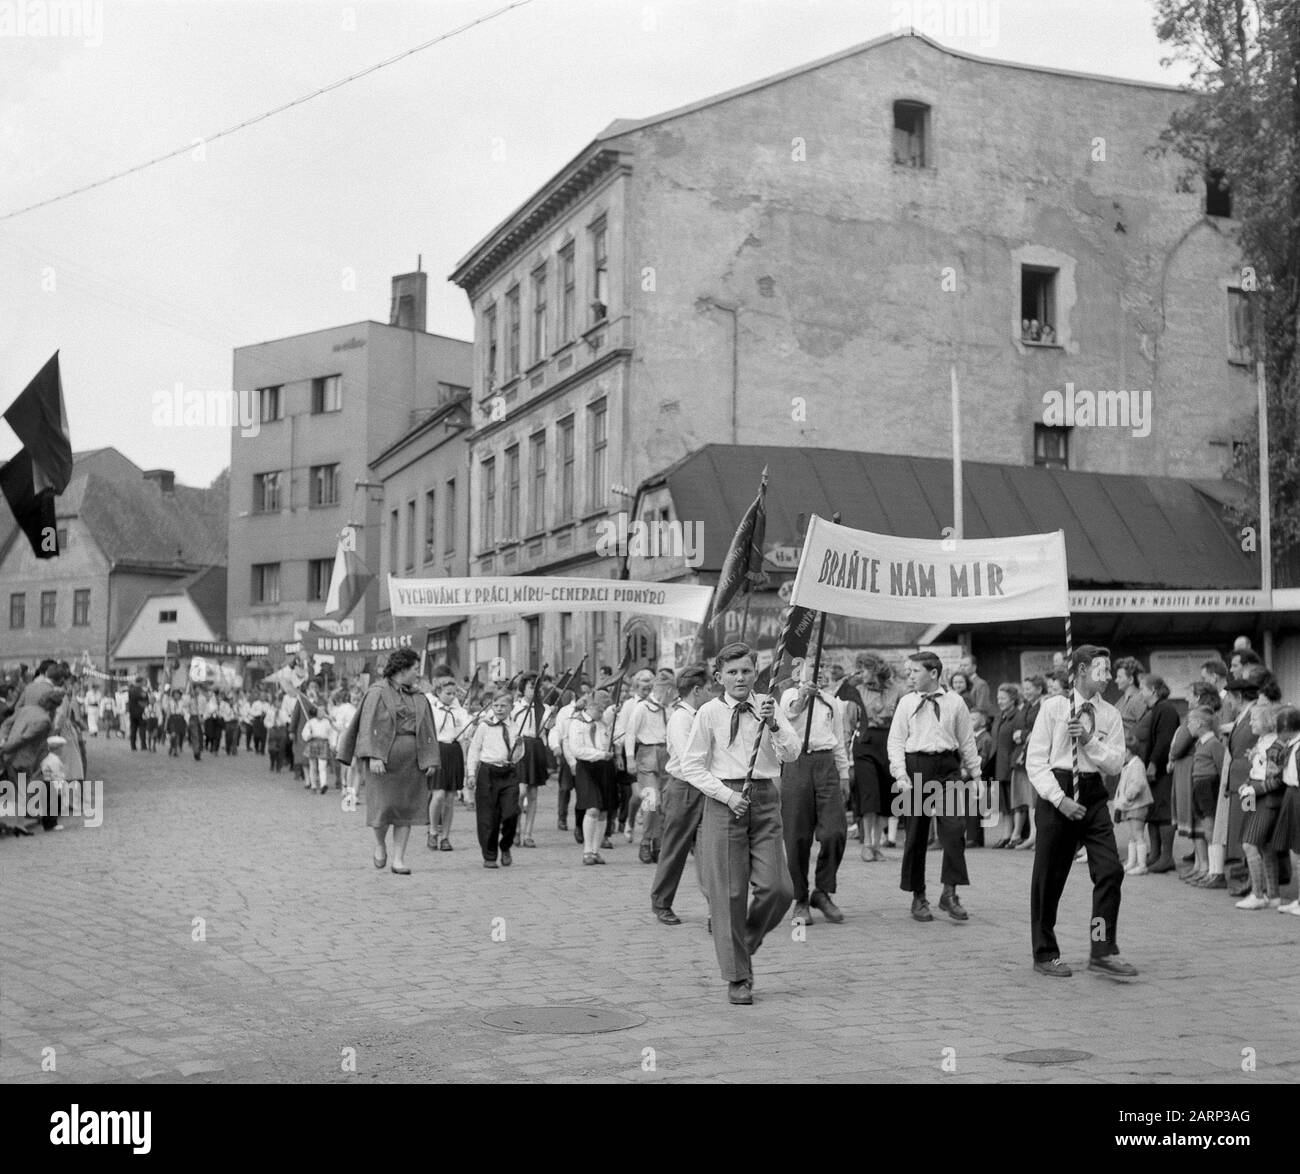 Pionierkongress in Nachod, Tschechien (ehemalige Tschechoslowakei), Mai 1959. Mädchen und Jungen marschieren mit Bannern und Fahnen auf der Straße. Stockfoto